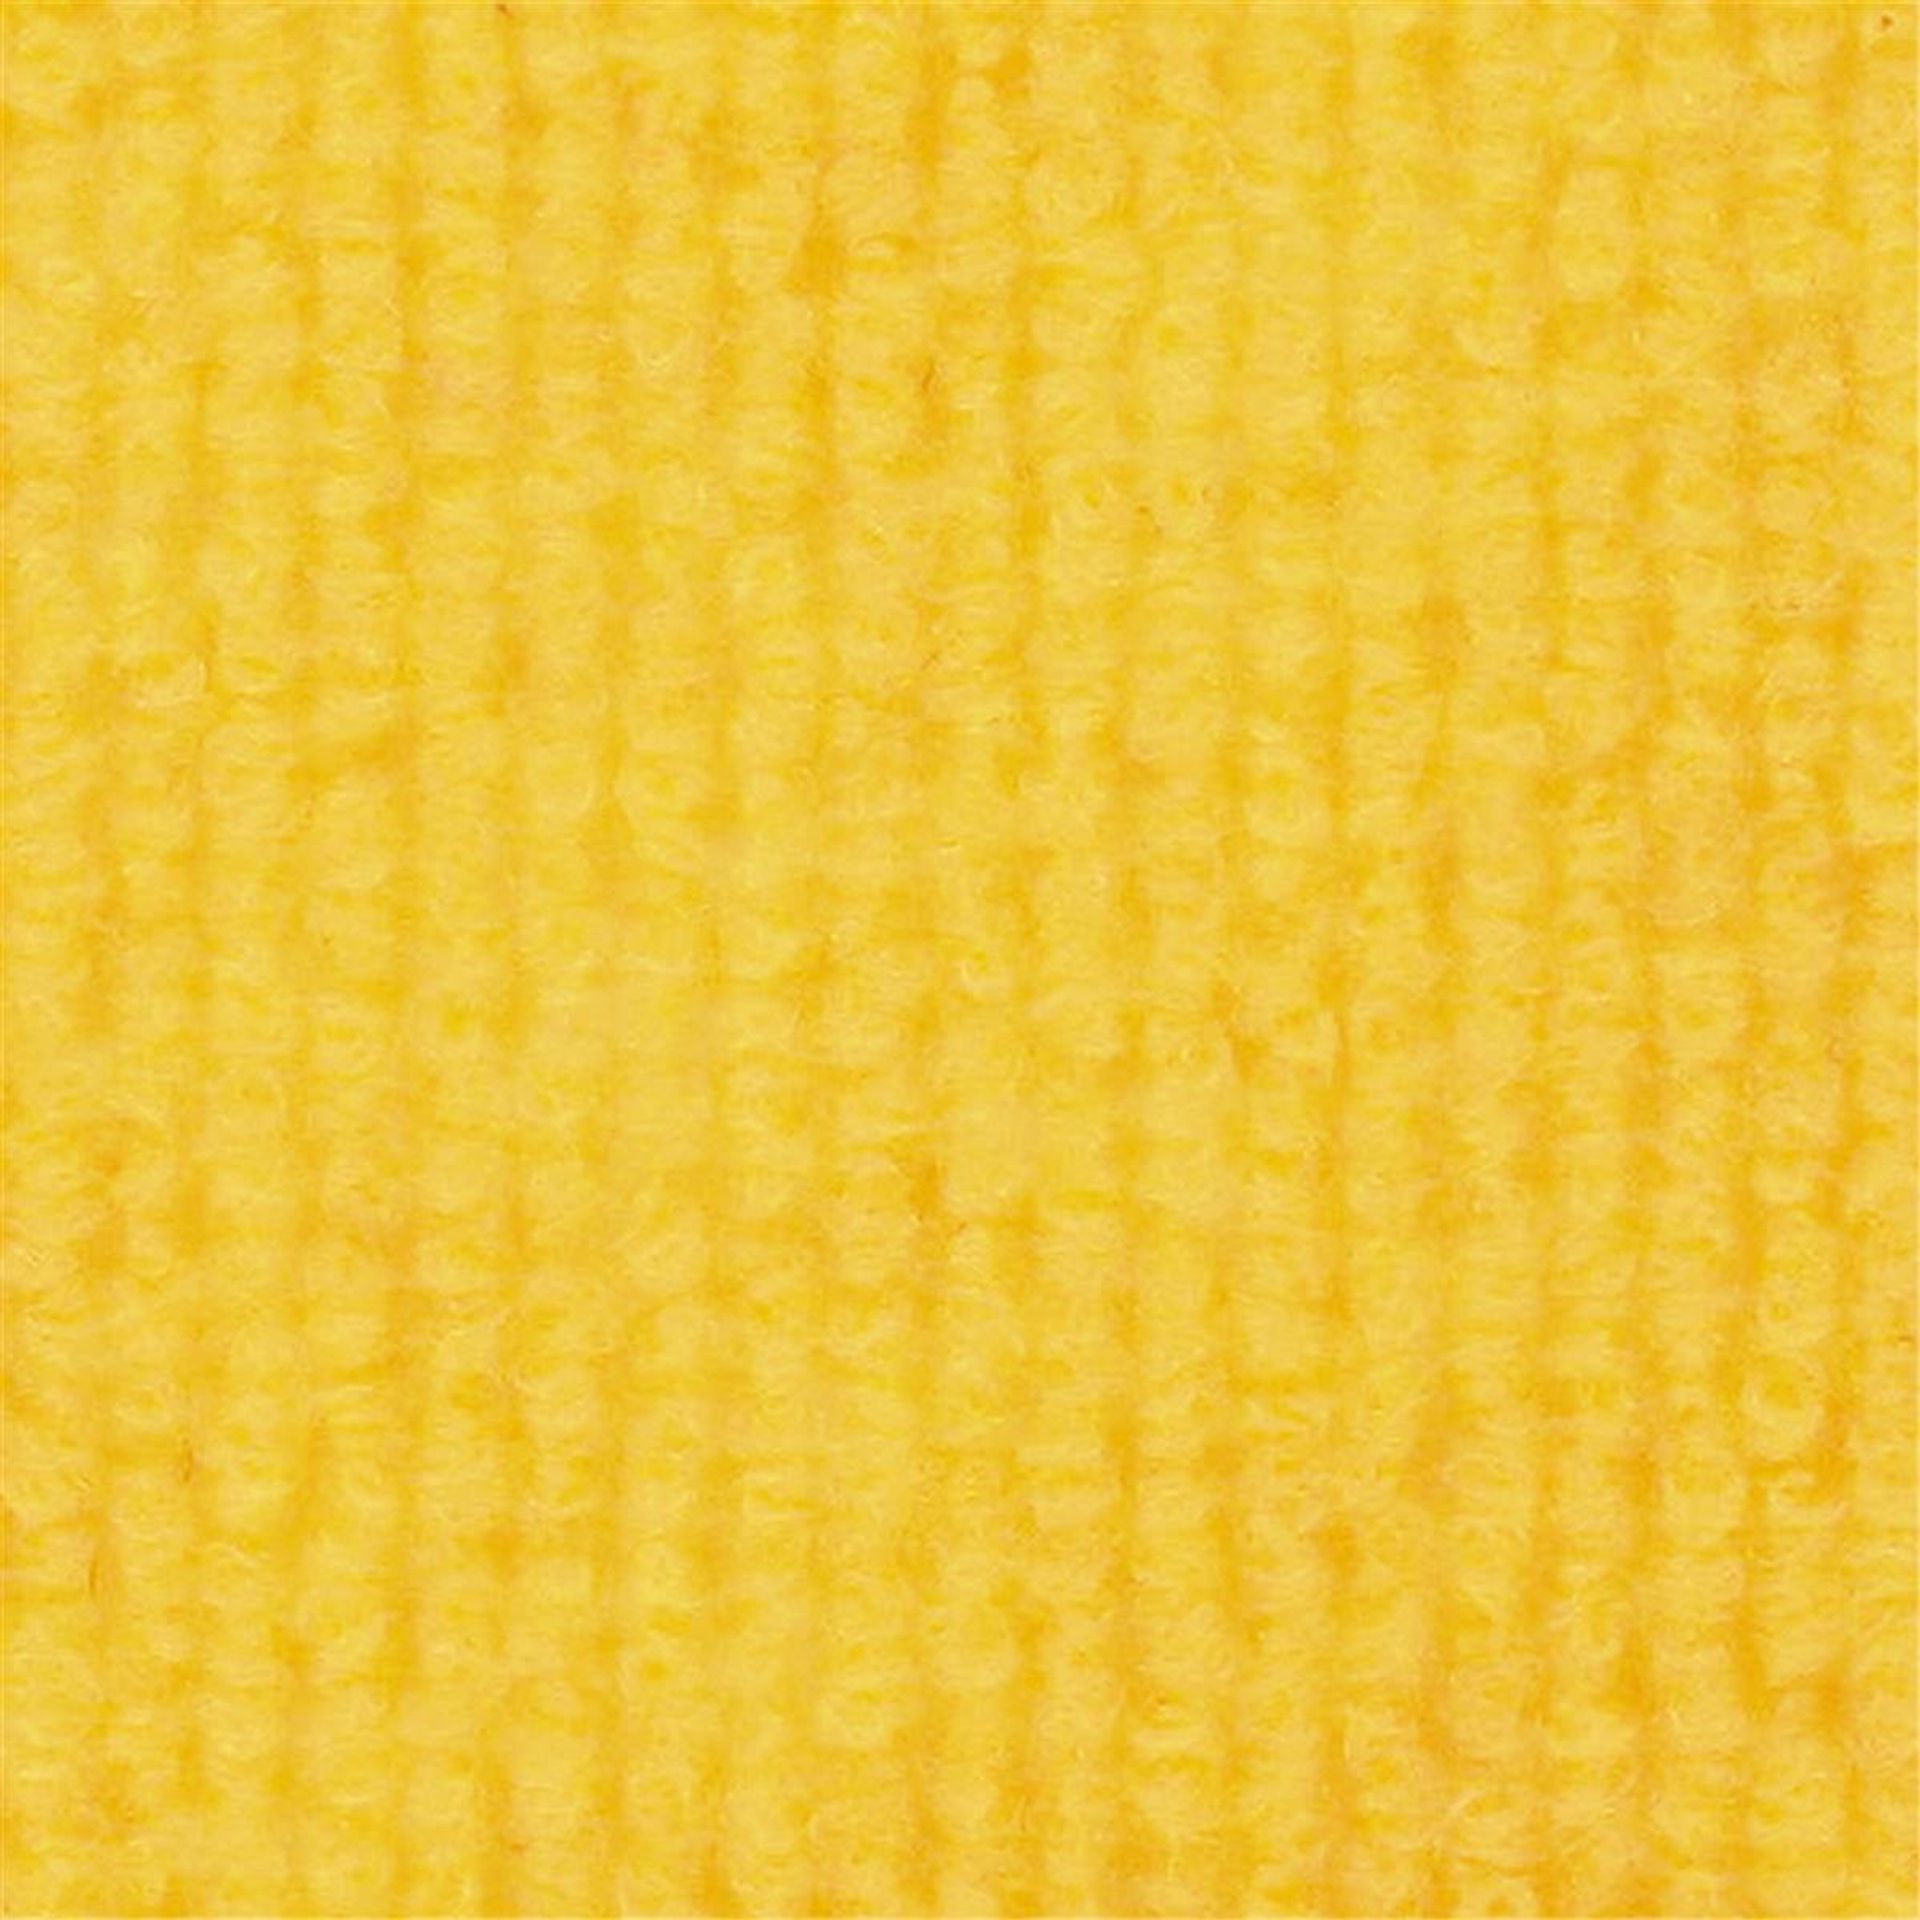 Messeboden Rips-Nadelvlies EXPOLINE Yellow 9213 100qm ohne Schutzfolie - Rollenbreite 200 cm